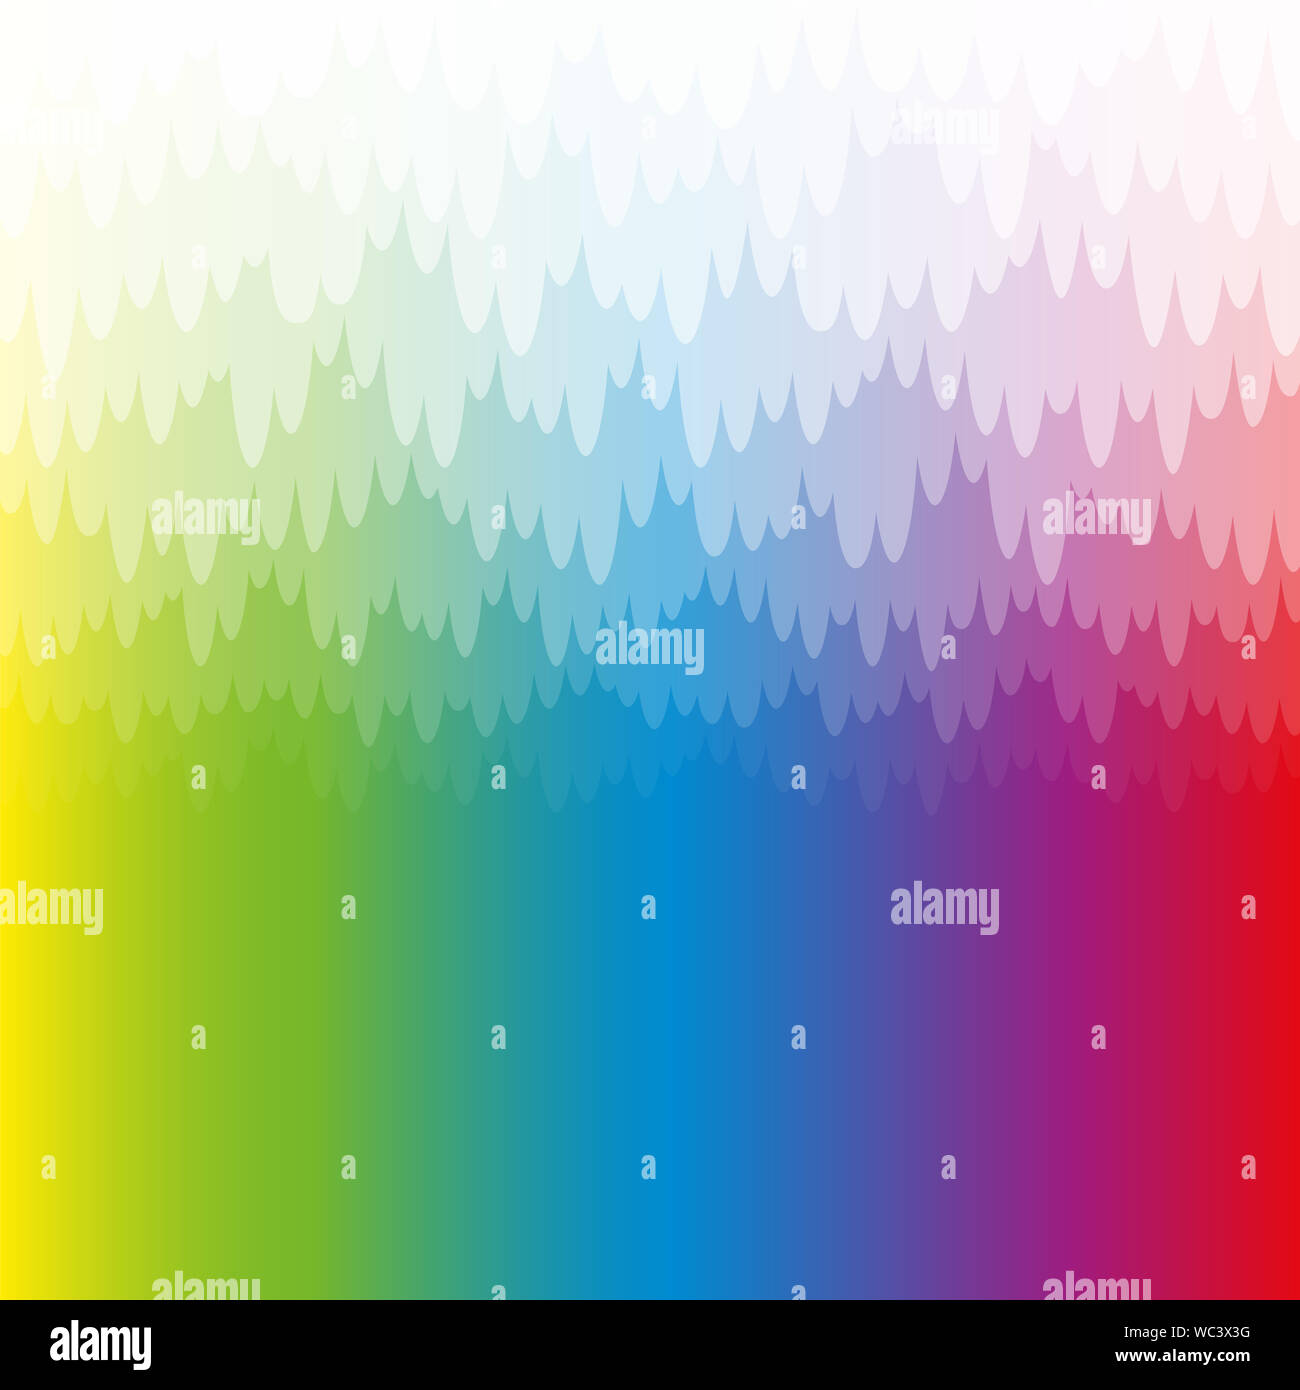 De couleur arc-en-ciel mystique et brumeuse avec fond blanc translucide pendentif banque du haze. Couleurs spectrales, format carré. Banque D'Images